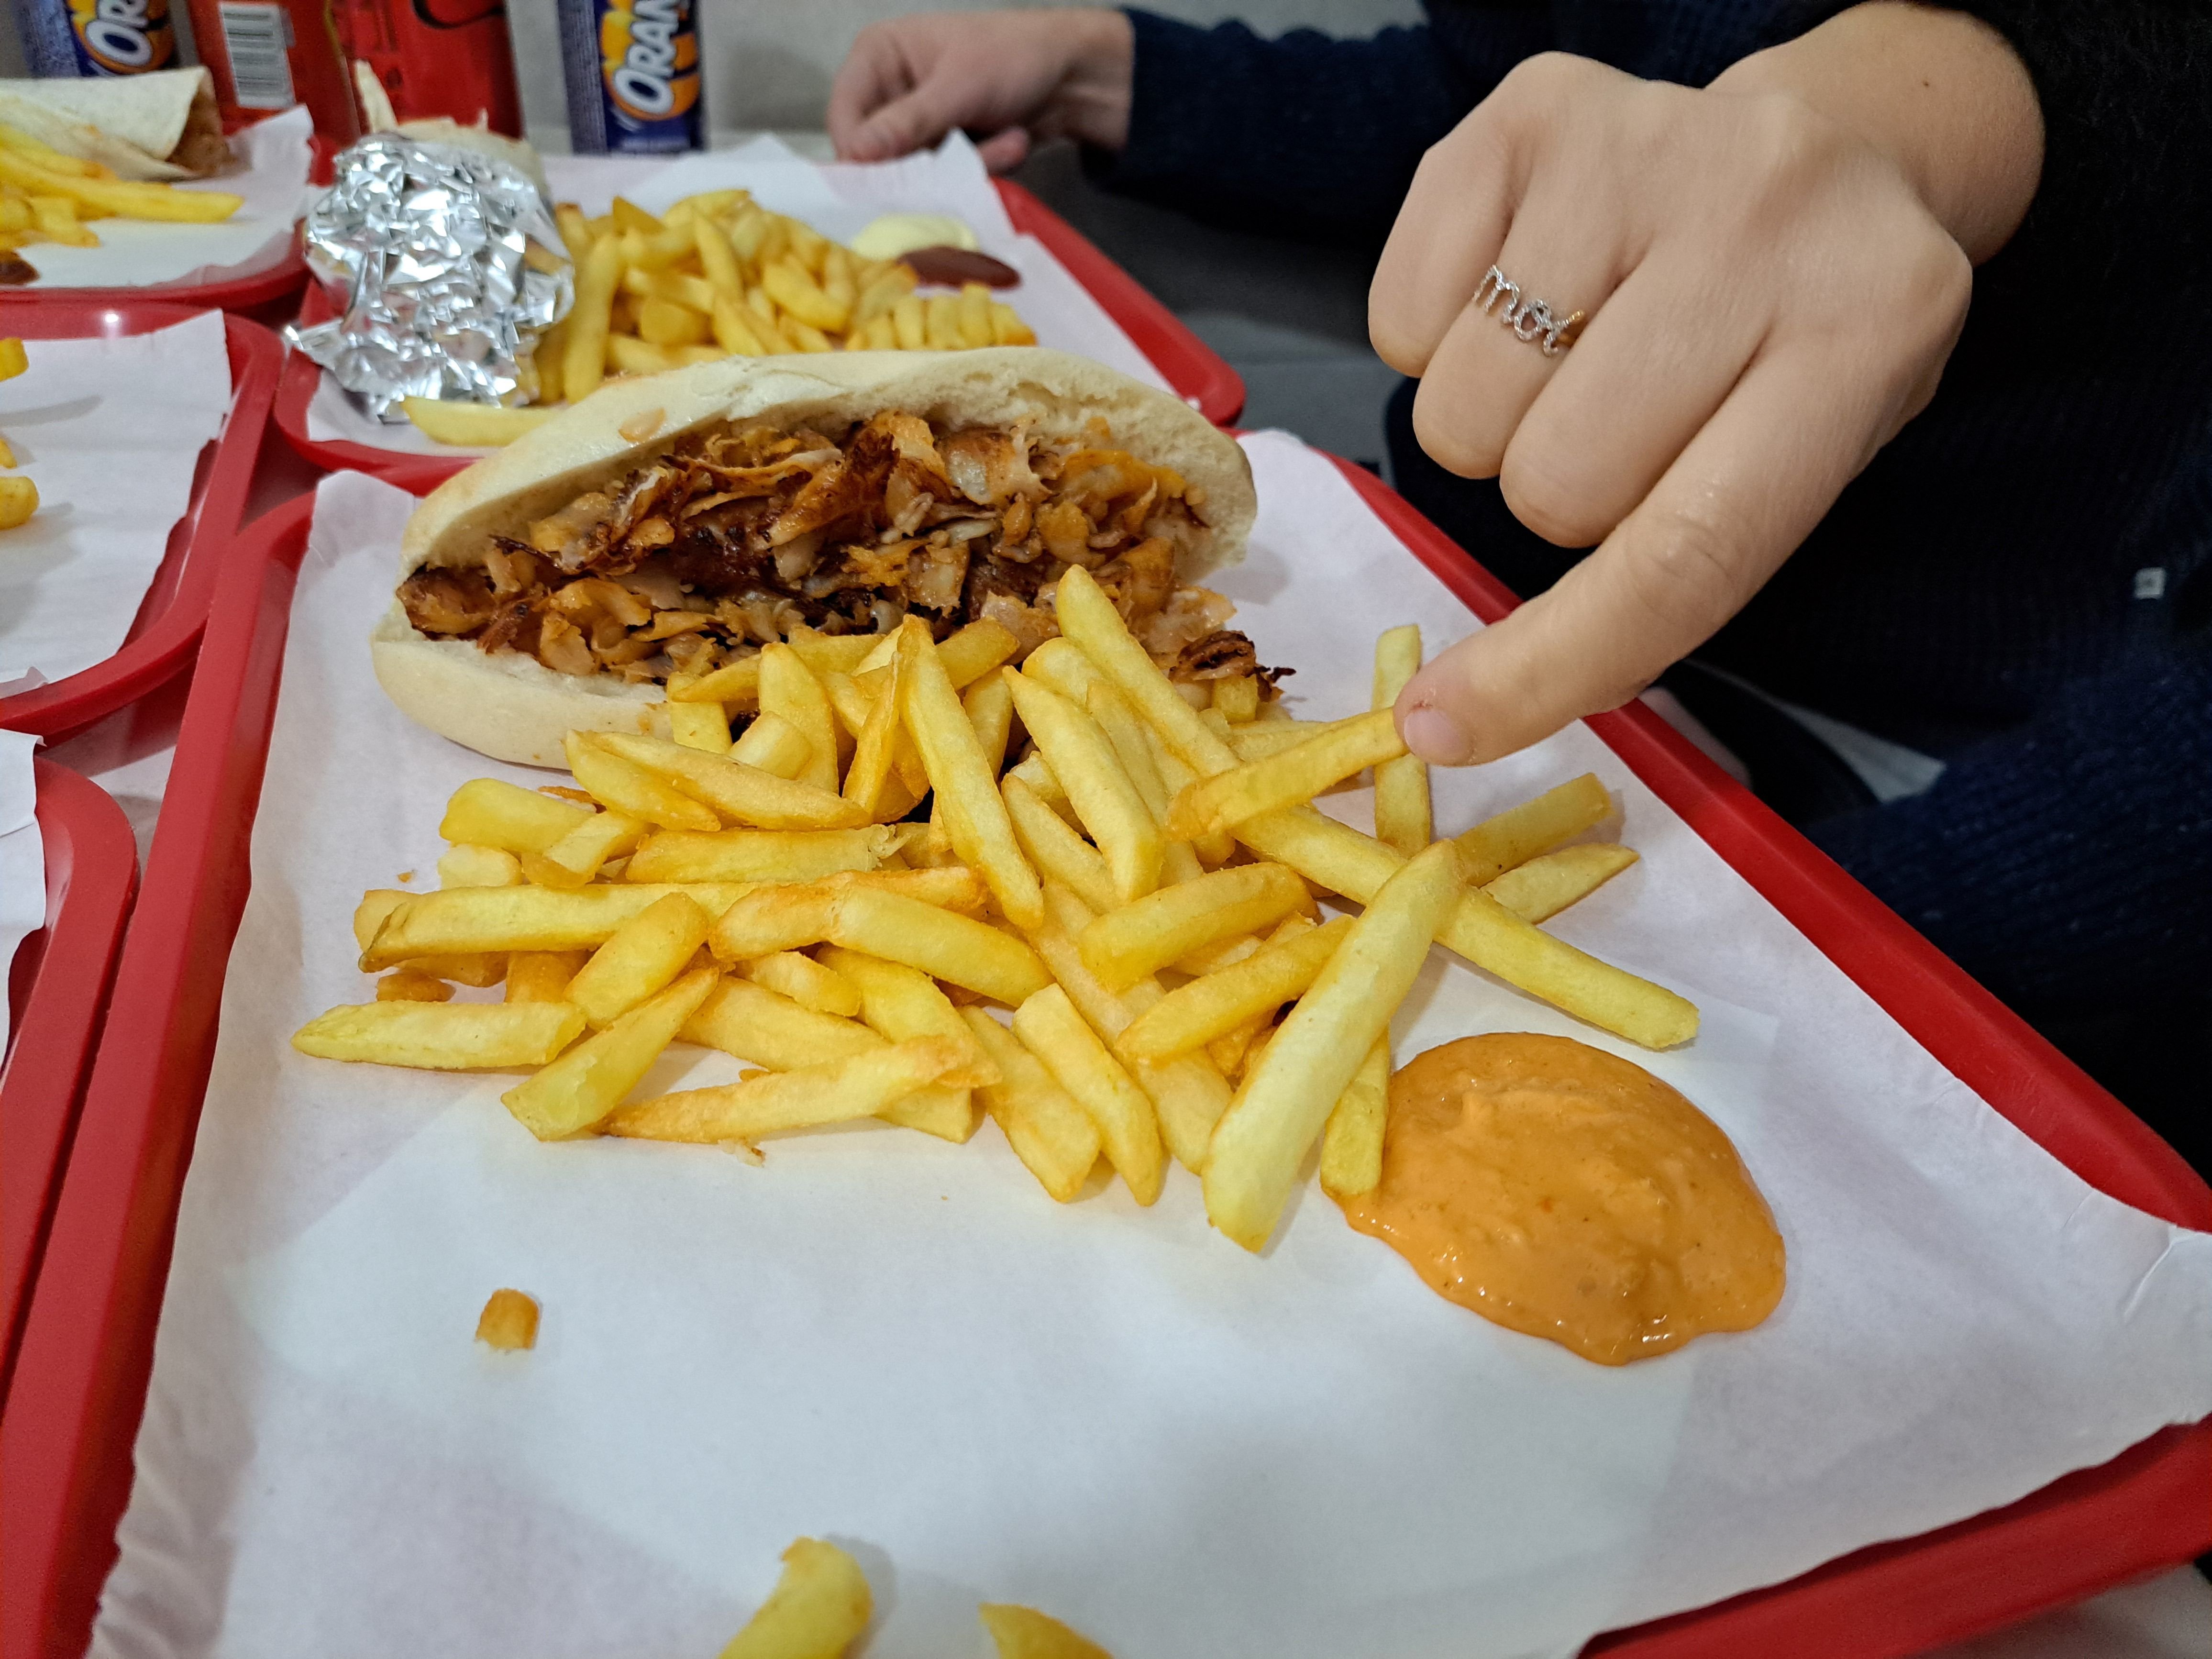 Corbeil-Essonnes (Essonne), mercredi 27 mars. Au restaurant Izmir, les frites et la viande sont généreusement servies, plus que les crudités. Au final, l'expérience est très positive. Surtout à ce prix-là. LP/Th.D.